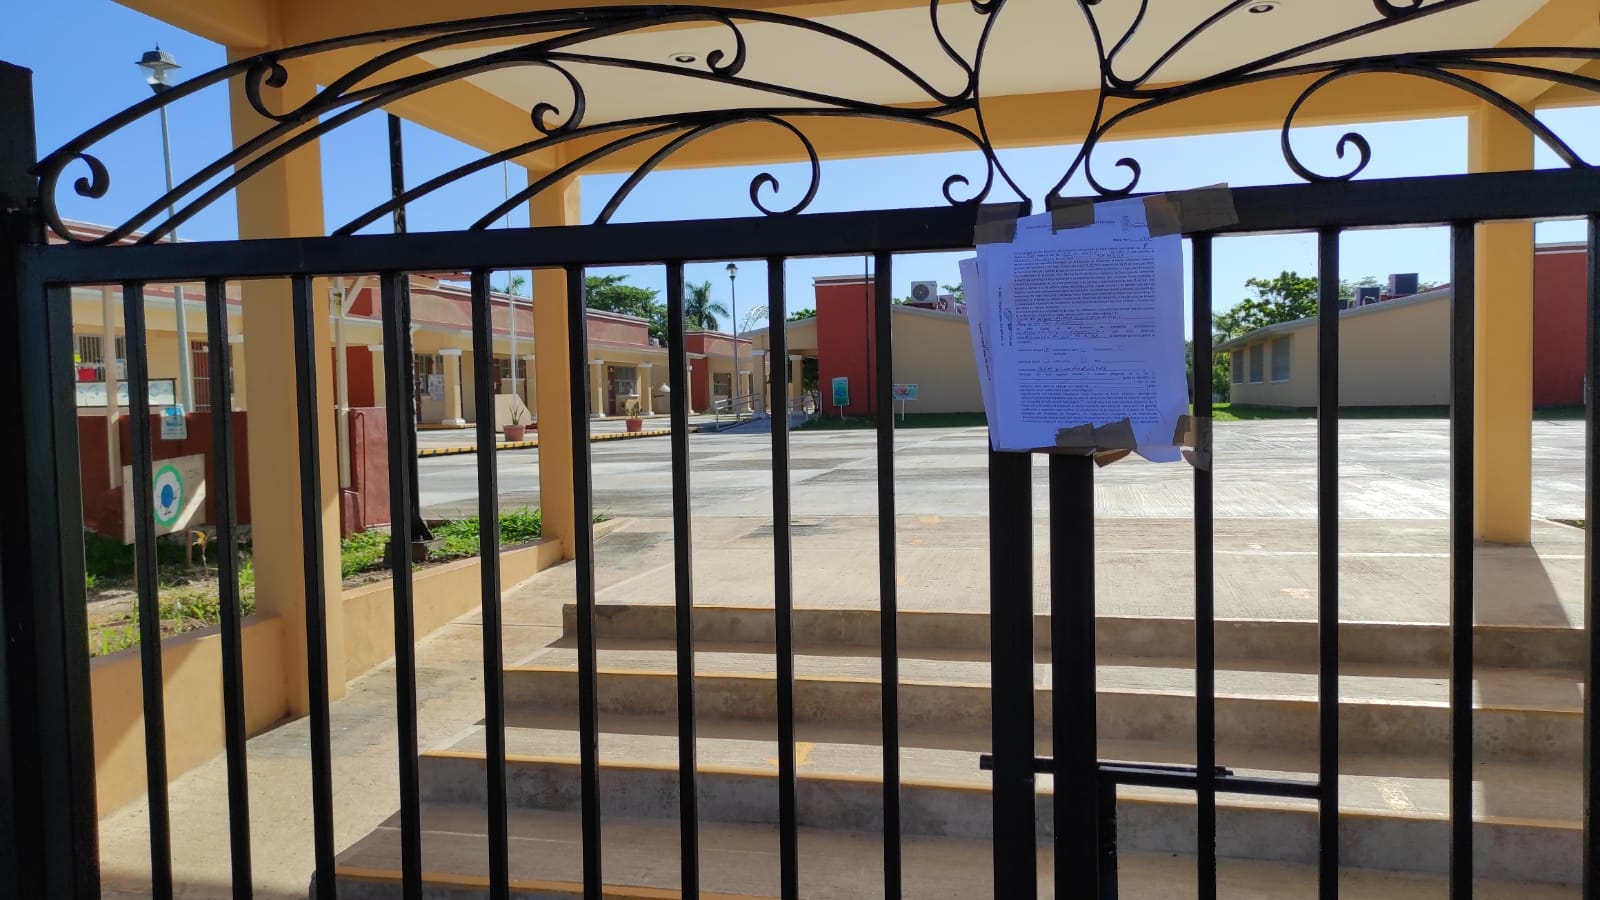 Se trata de la escuela primaria "Miguel Hidalgo" ubicado en la ciudad de San Francisco de Campeche